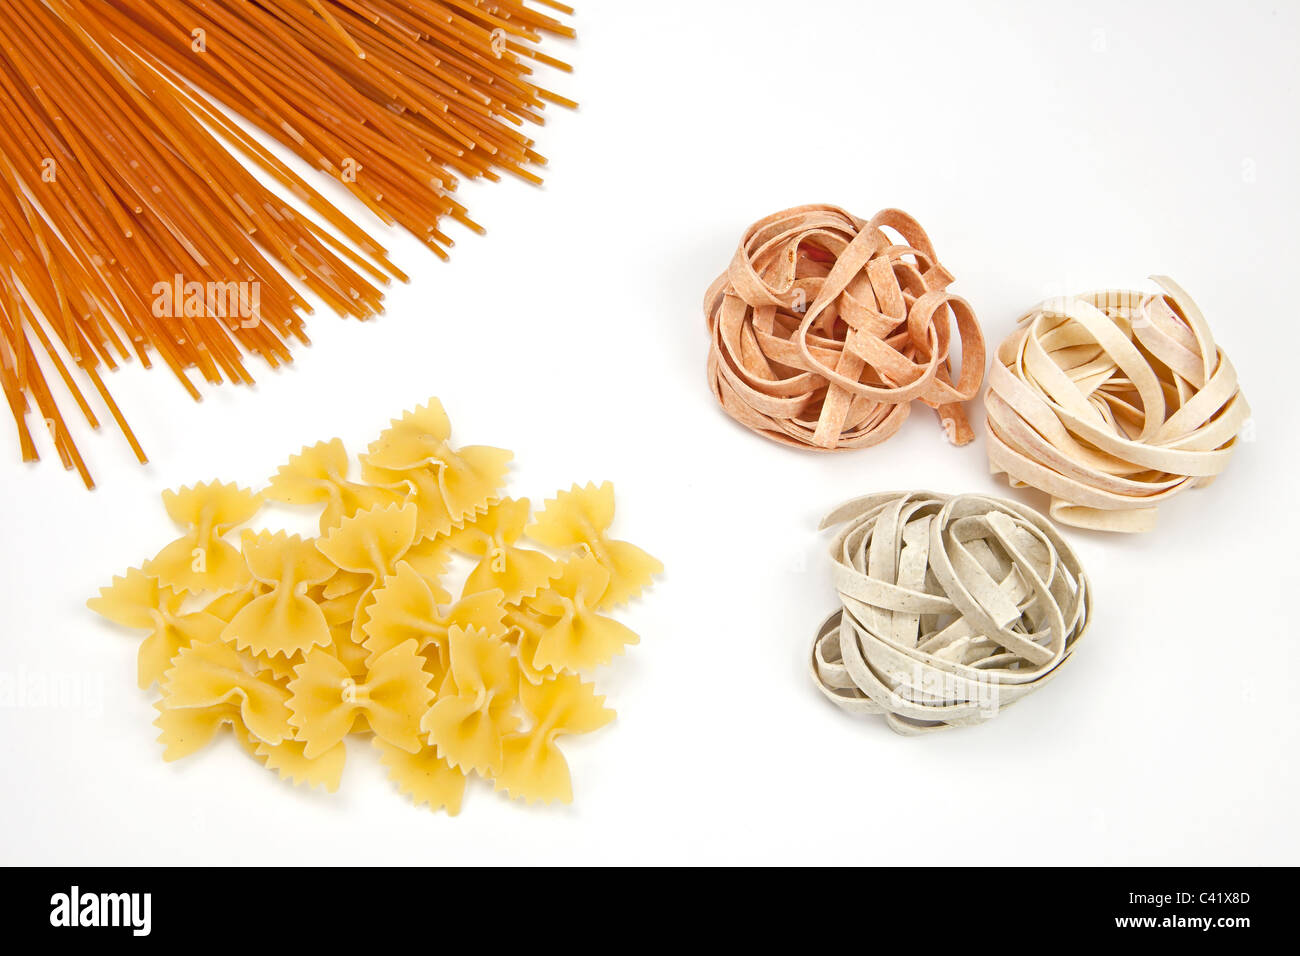 Trois différentes sortes de pâtes - spaghetti, farfalle, tagliatelles Banque D'Images